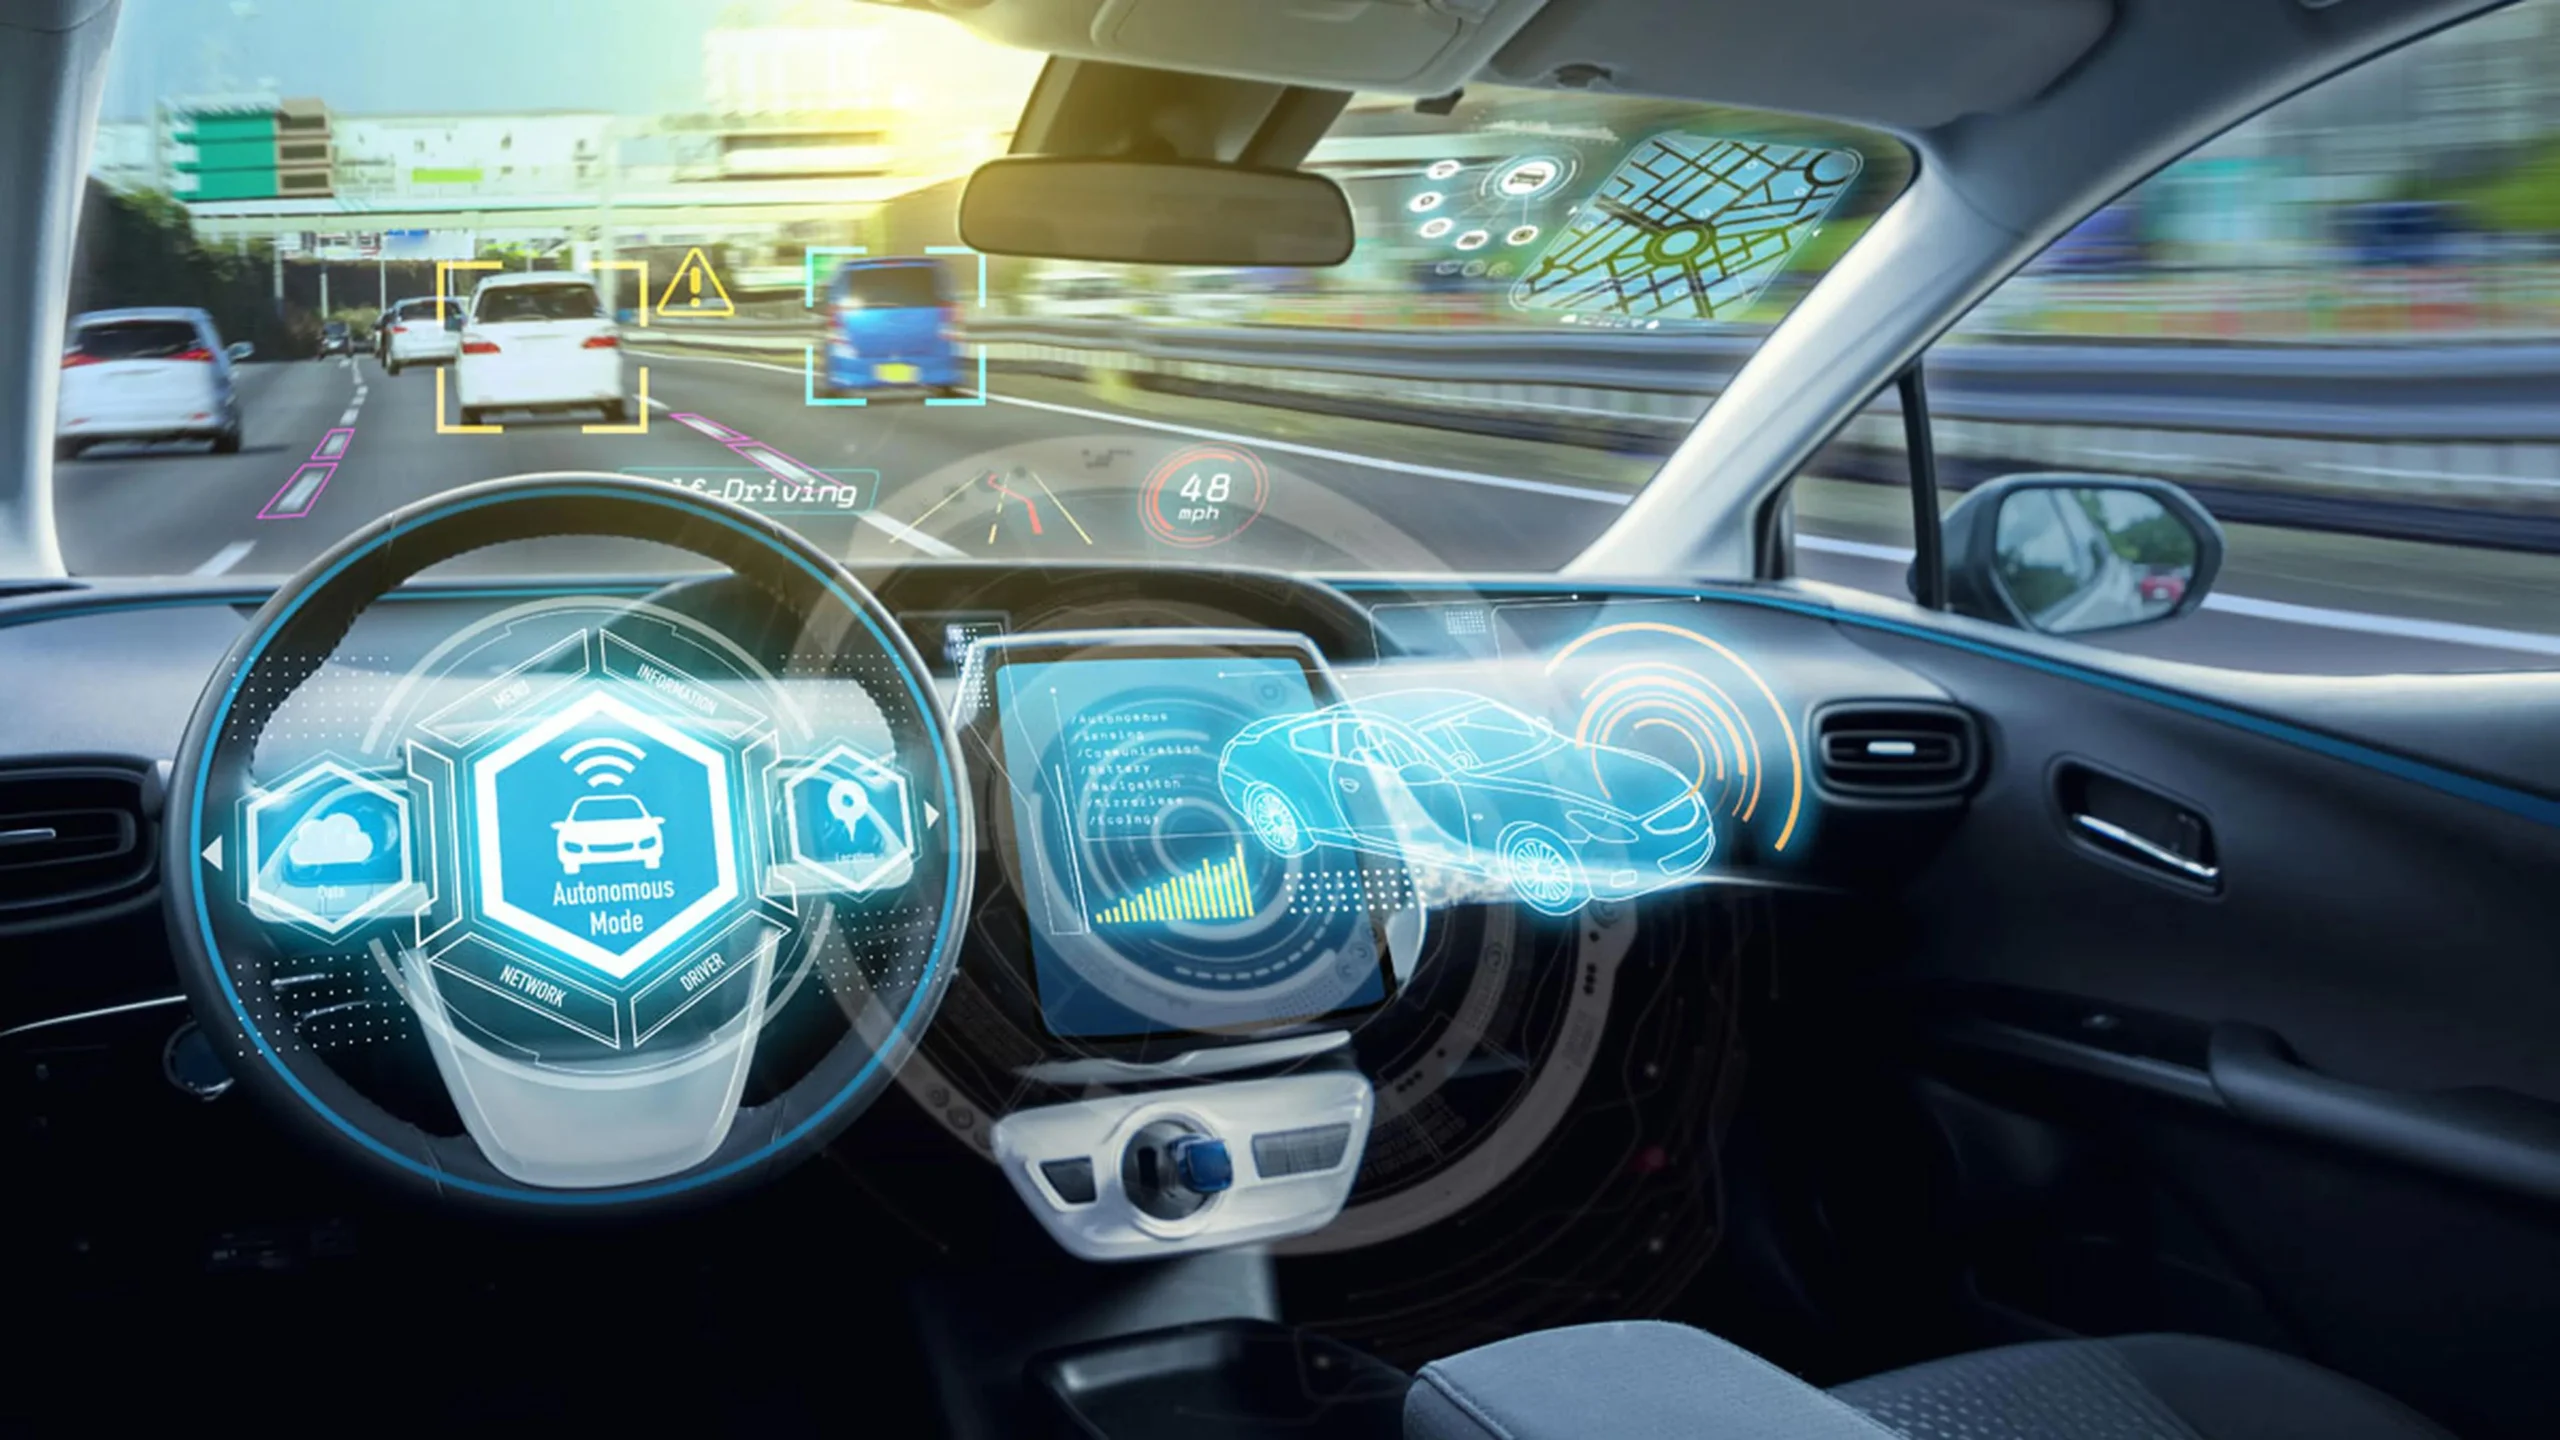 coches con inteligencia artificial - Qué coches tienen inteligencia artificial